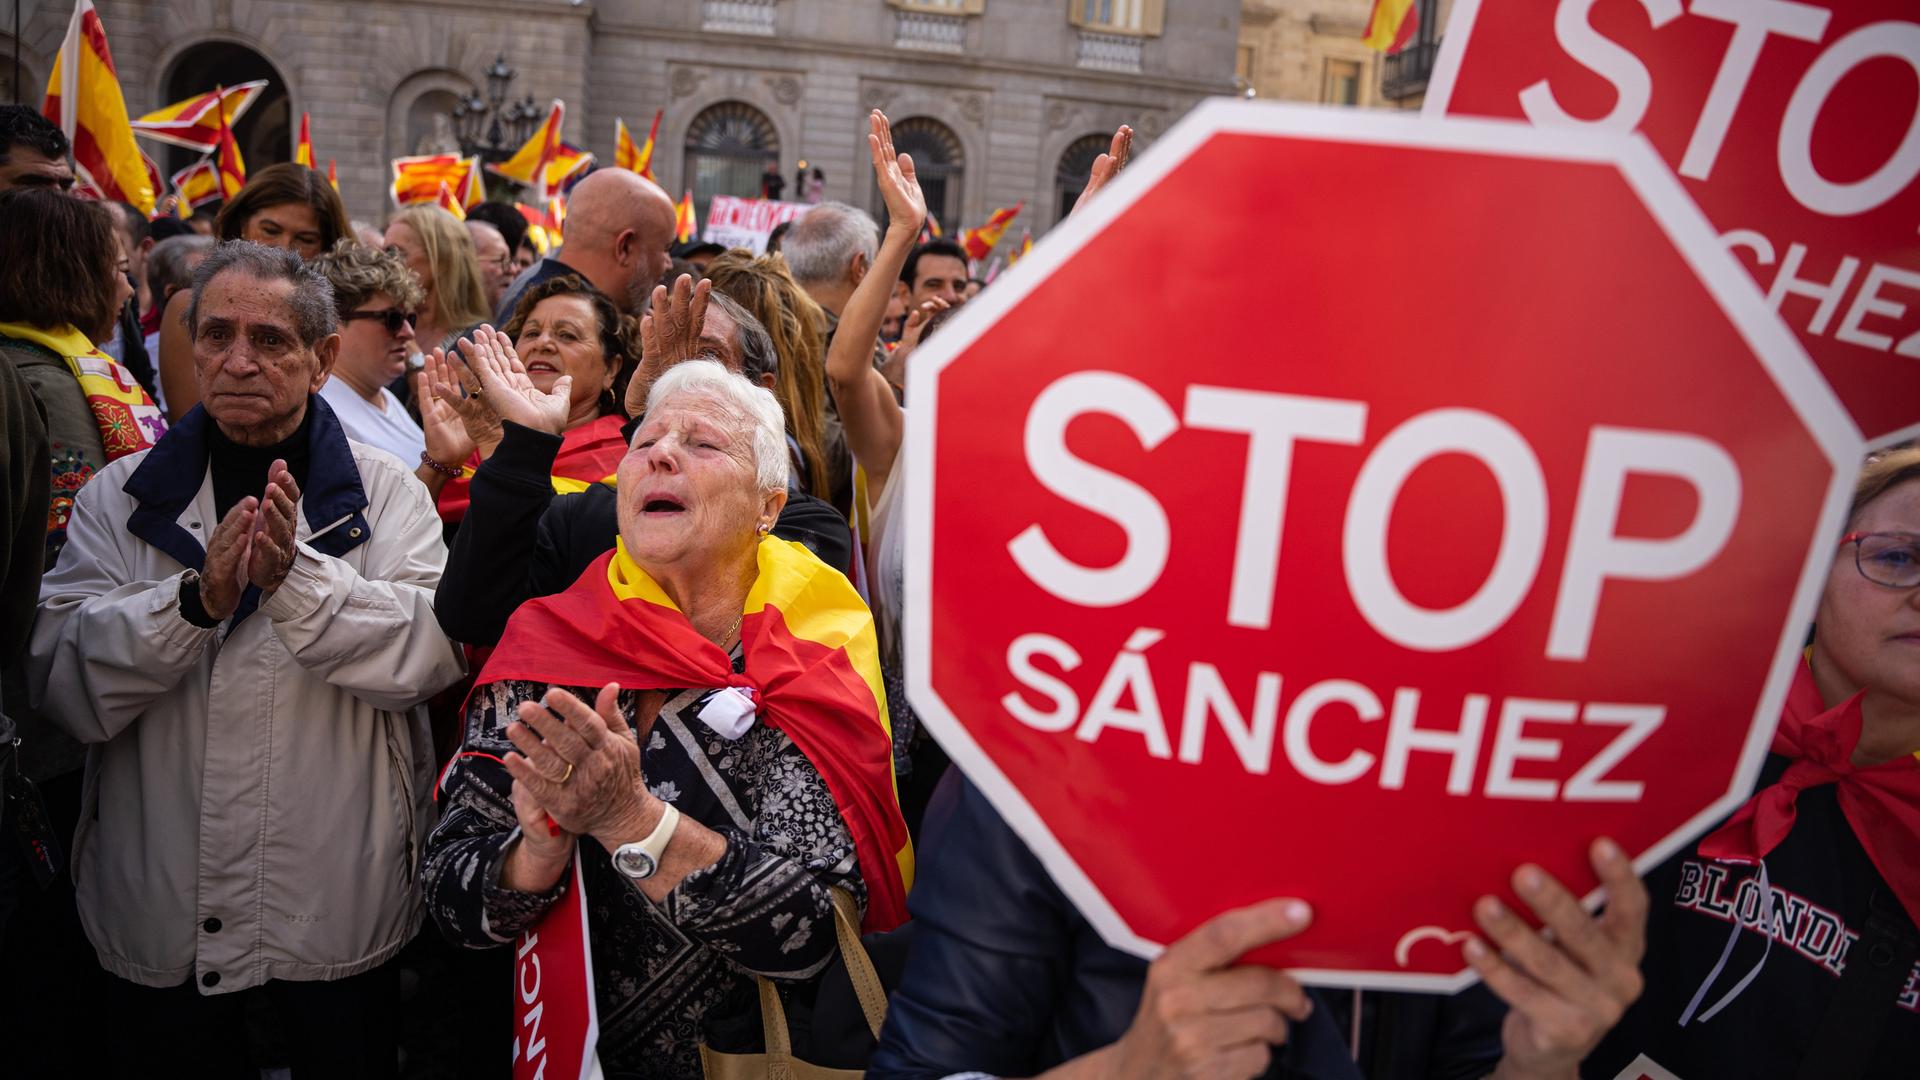 Demonstranten halten rote Pappschilder hoch, auf denen "Stop Sánchez" steht: Tausende protestieren in Barcelona gegen das Amnestiegesetz für katalanische Separatisten.

